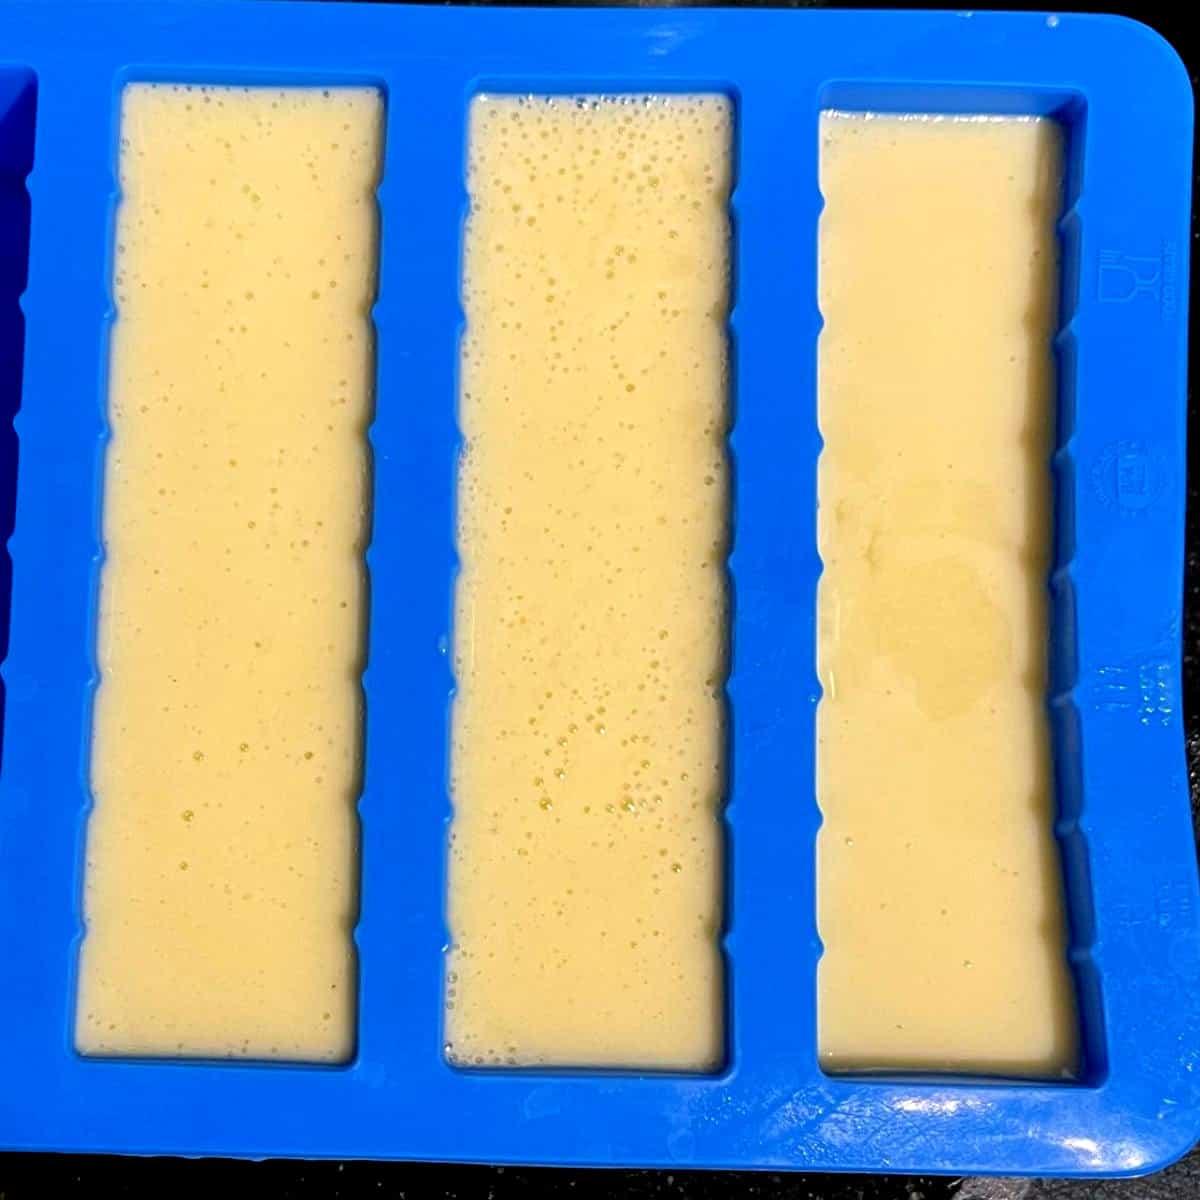 Vegan butter sticks in mold before setting.